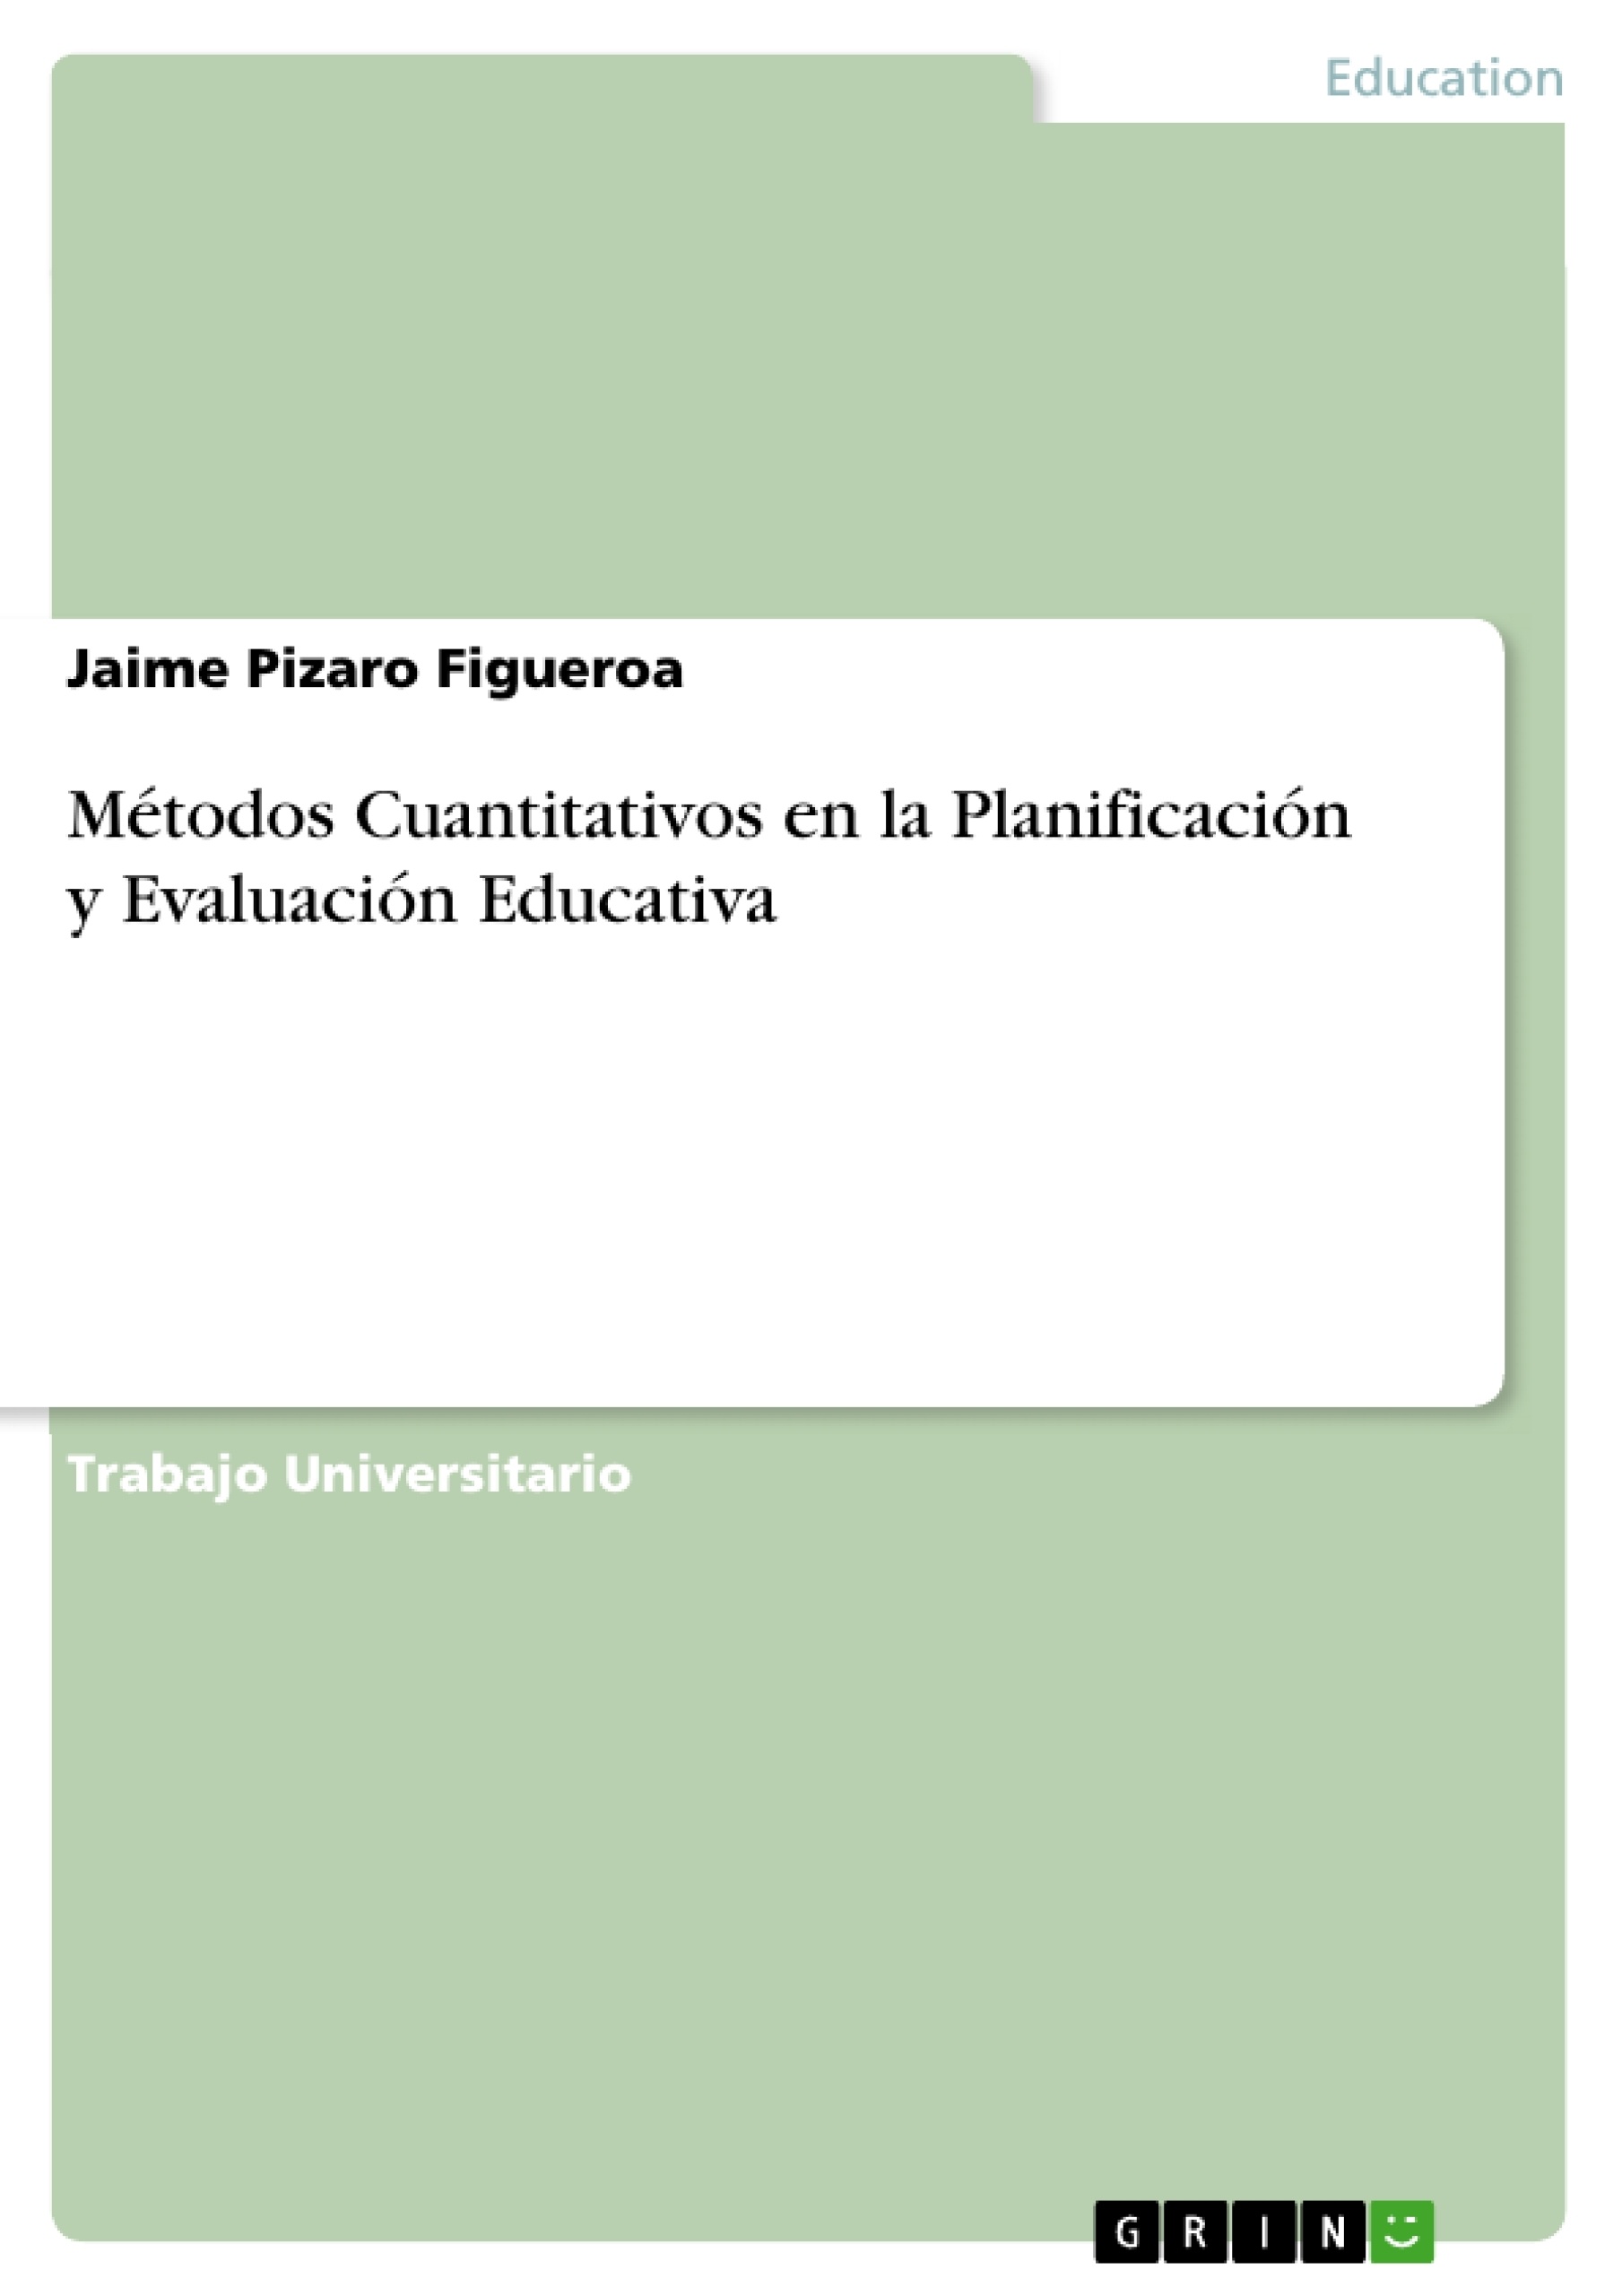 Título: Métodos Cuantitativos en la Planificación y Evaluación Educativa